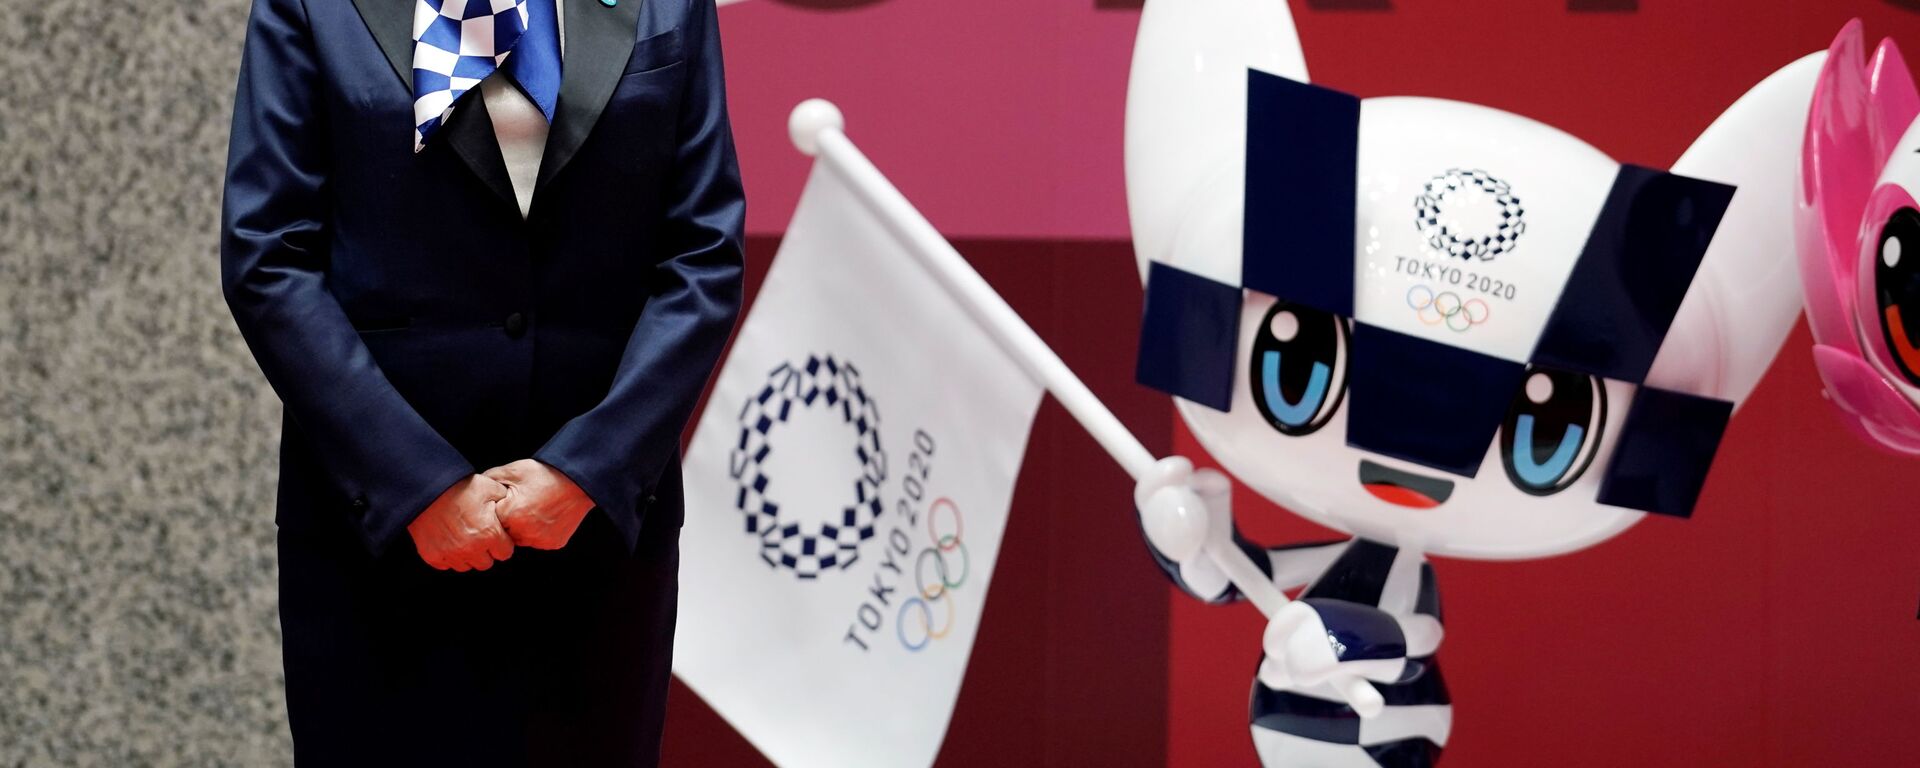 Мэр Токио Юрико Коикэ на мероприятии по случаю 100 дней до Олийписких игр в Токио  - Sputnik Латвия, 1920, 09.07.2021